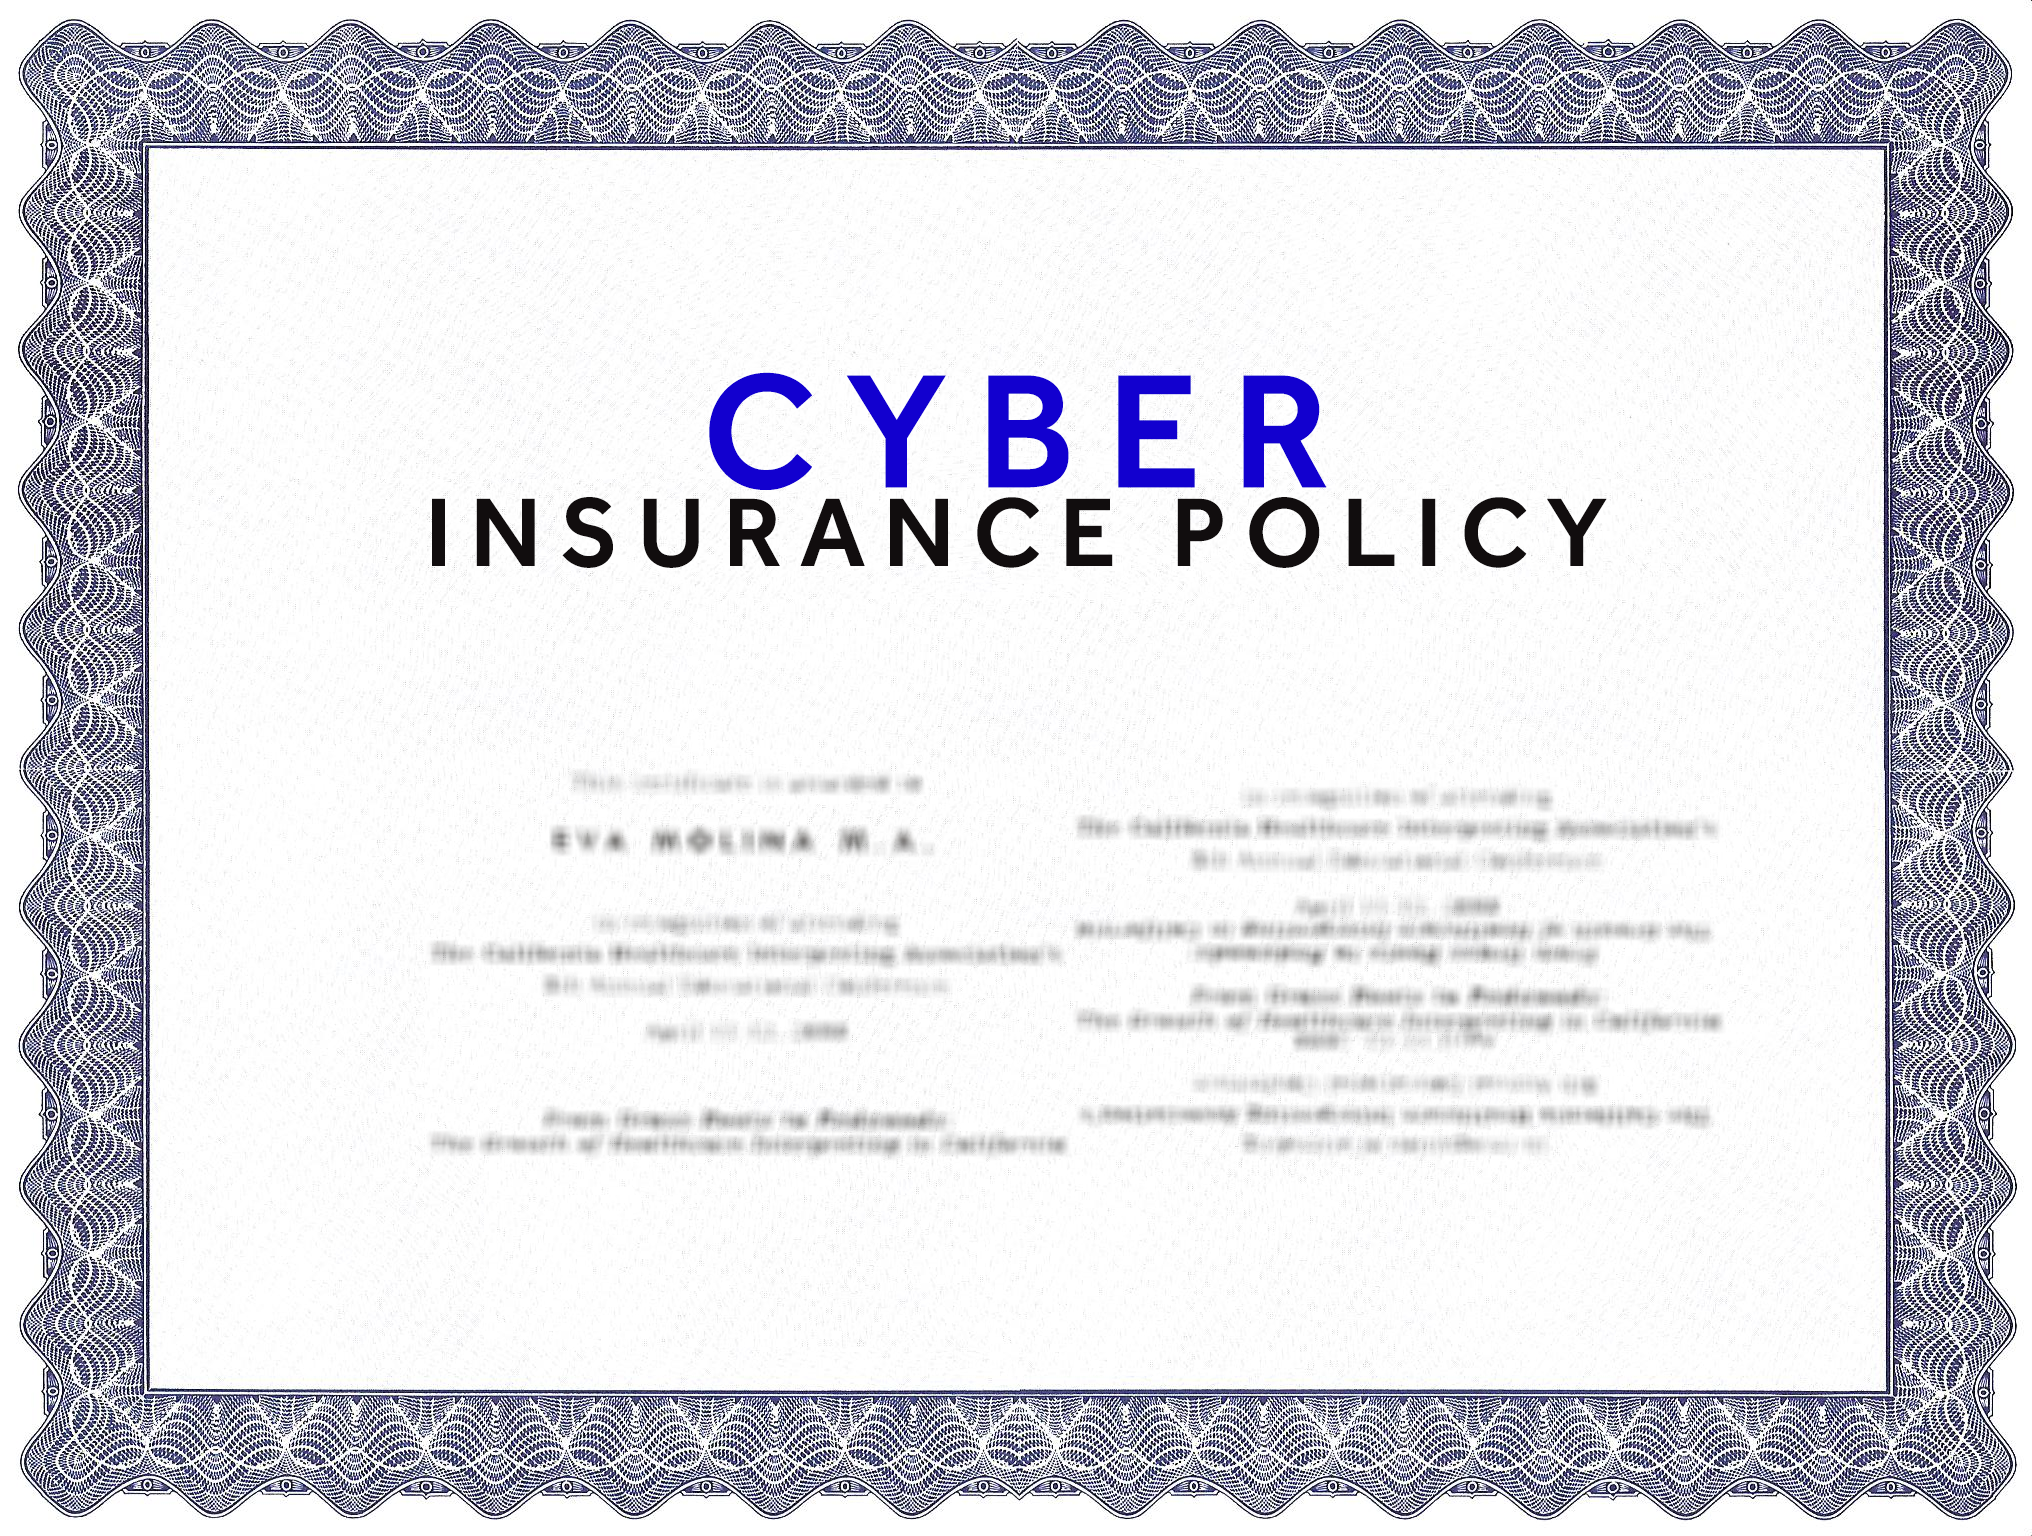 2016-03-23 cyber insurance